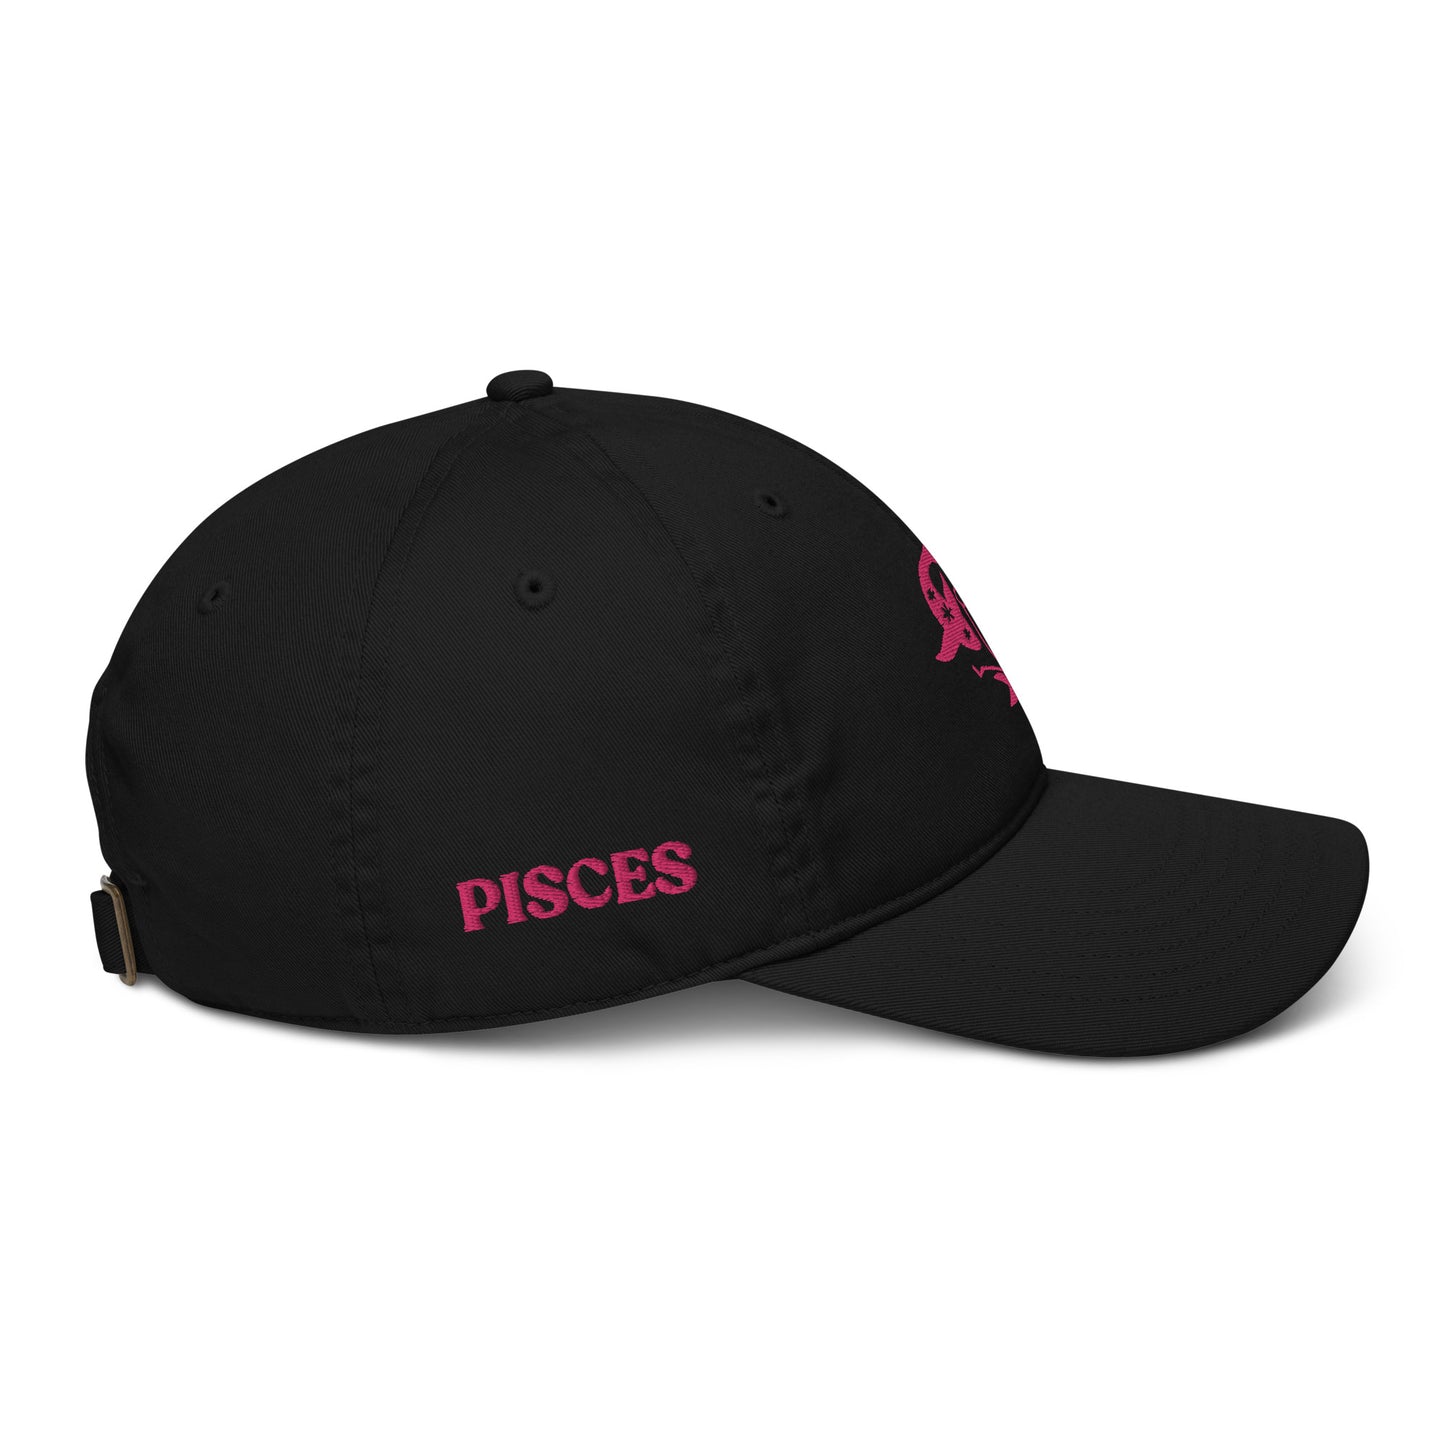 PISCES - ORGANIC HAT